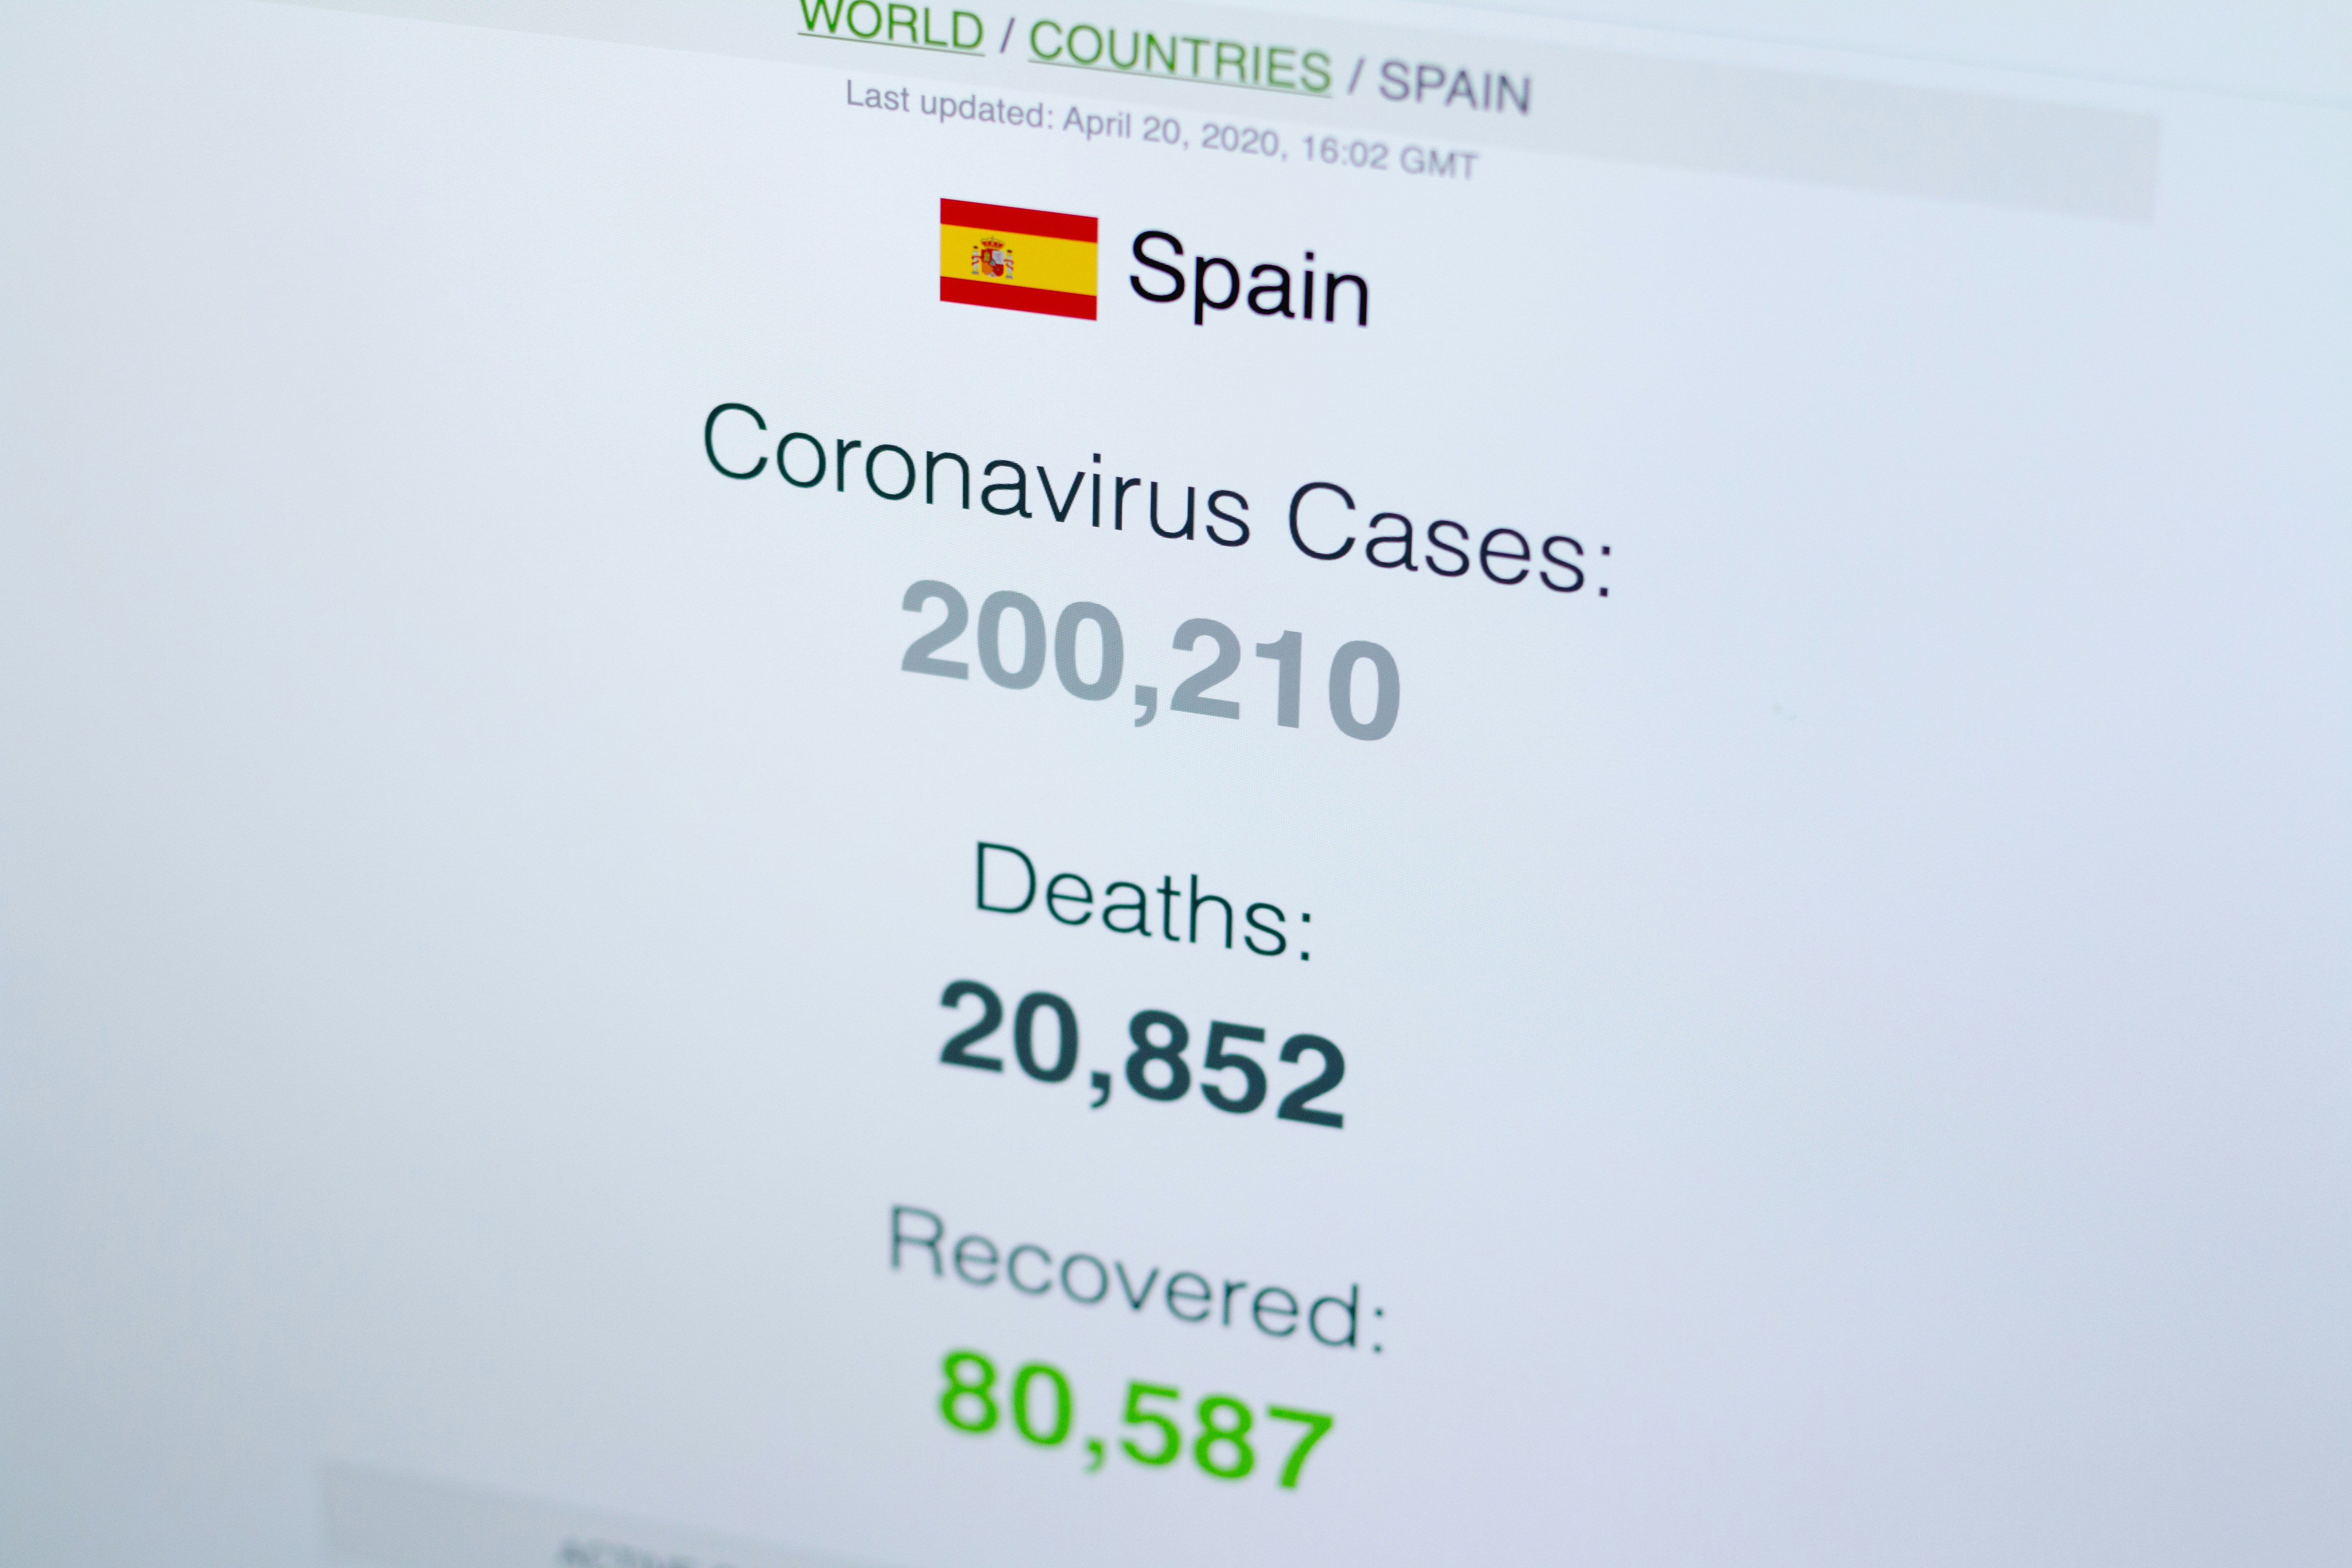 Coronavirus / Covid-19 cases in Spain. (20.04.2020) Source: www.worldometers.info/coronavirus